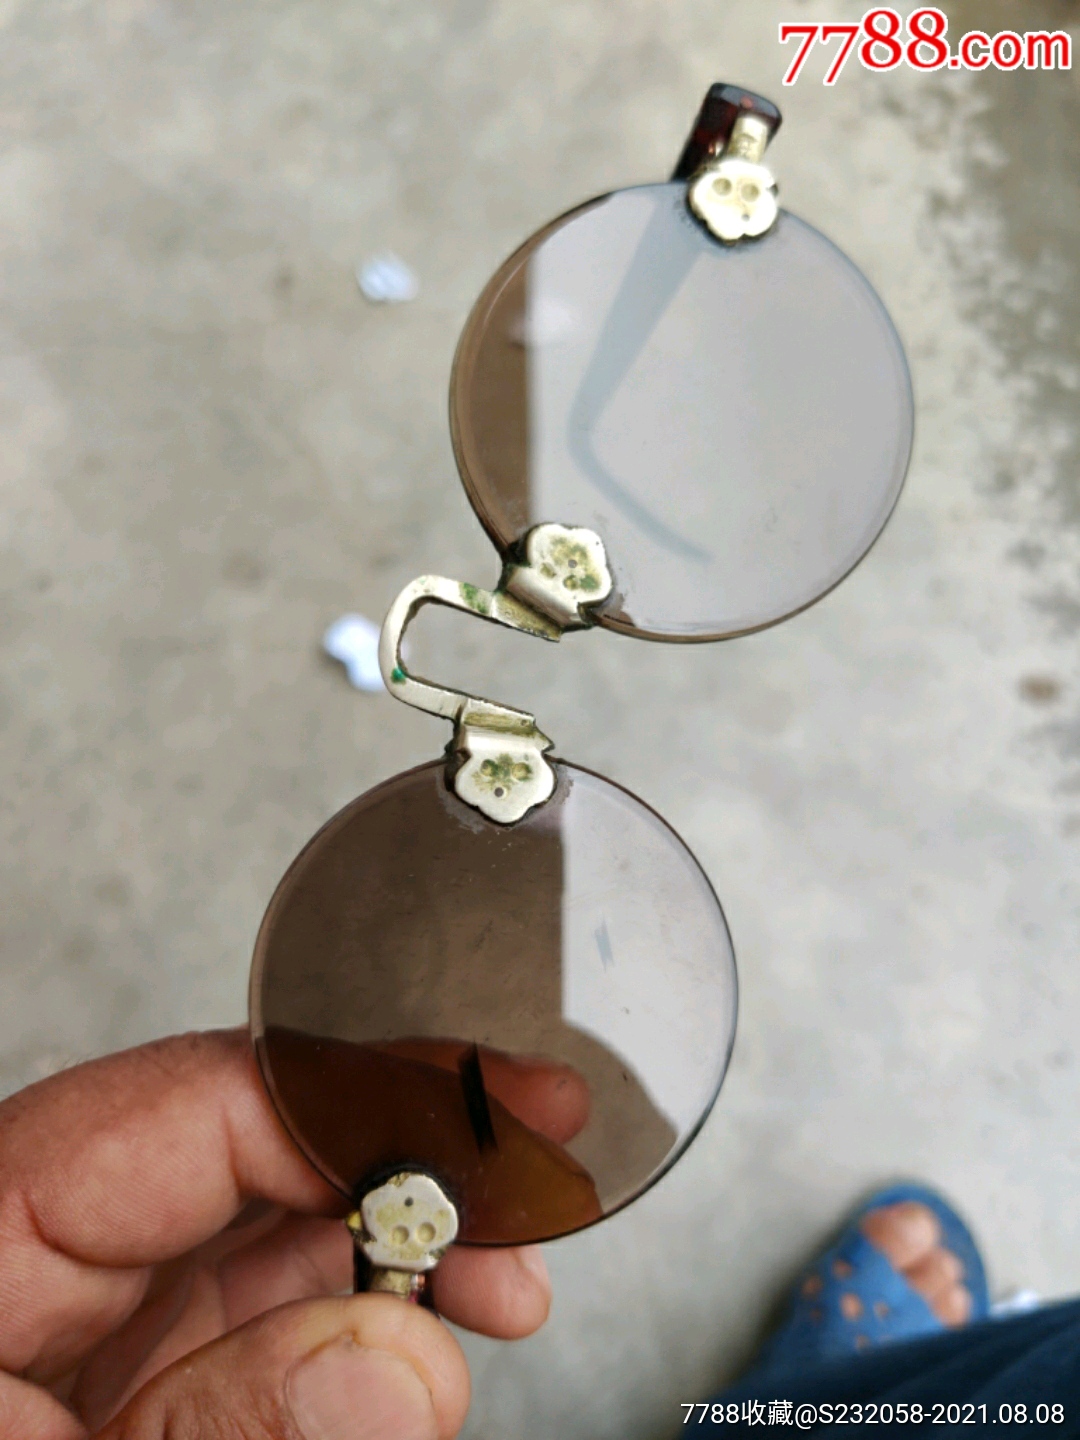 德华老眼镜镜片直径55厘米厚05厘米